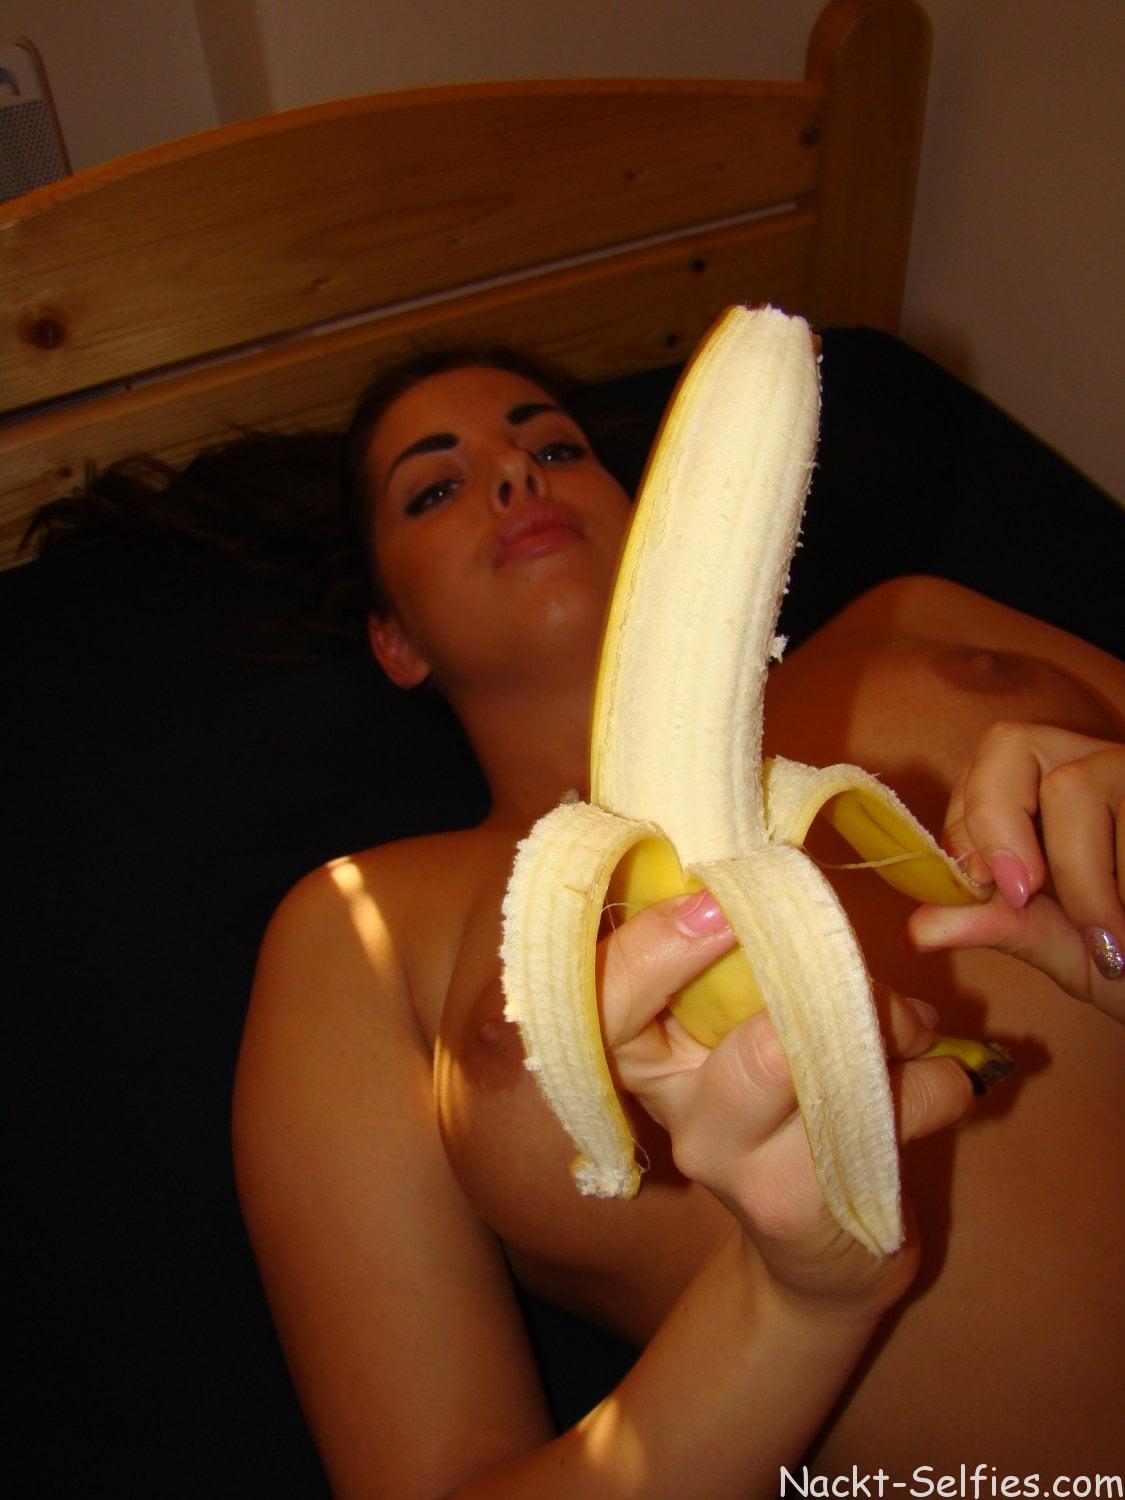 Sexbild mit Banane Teen Marina 06